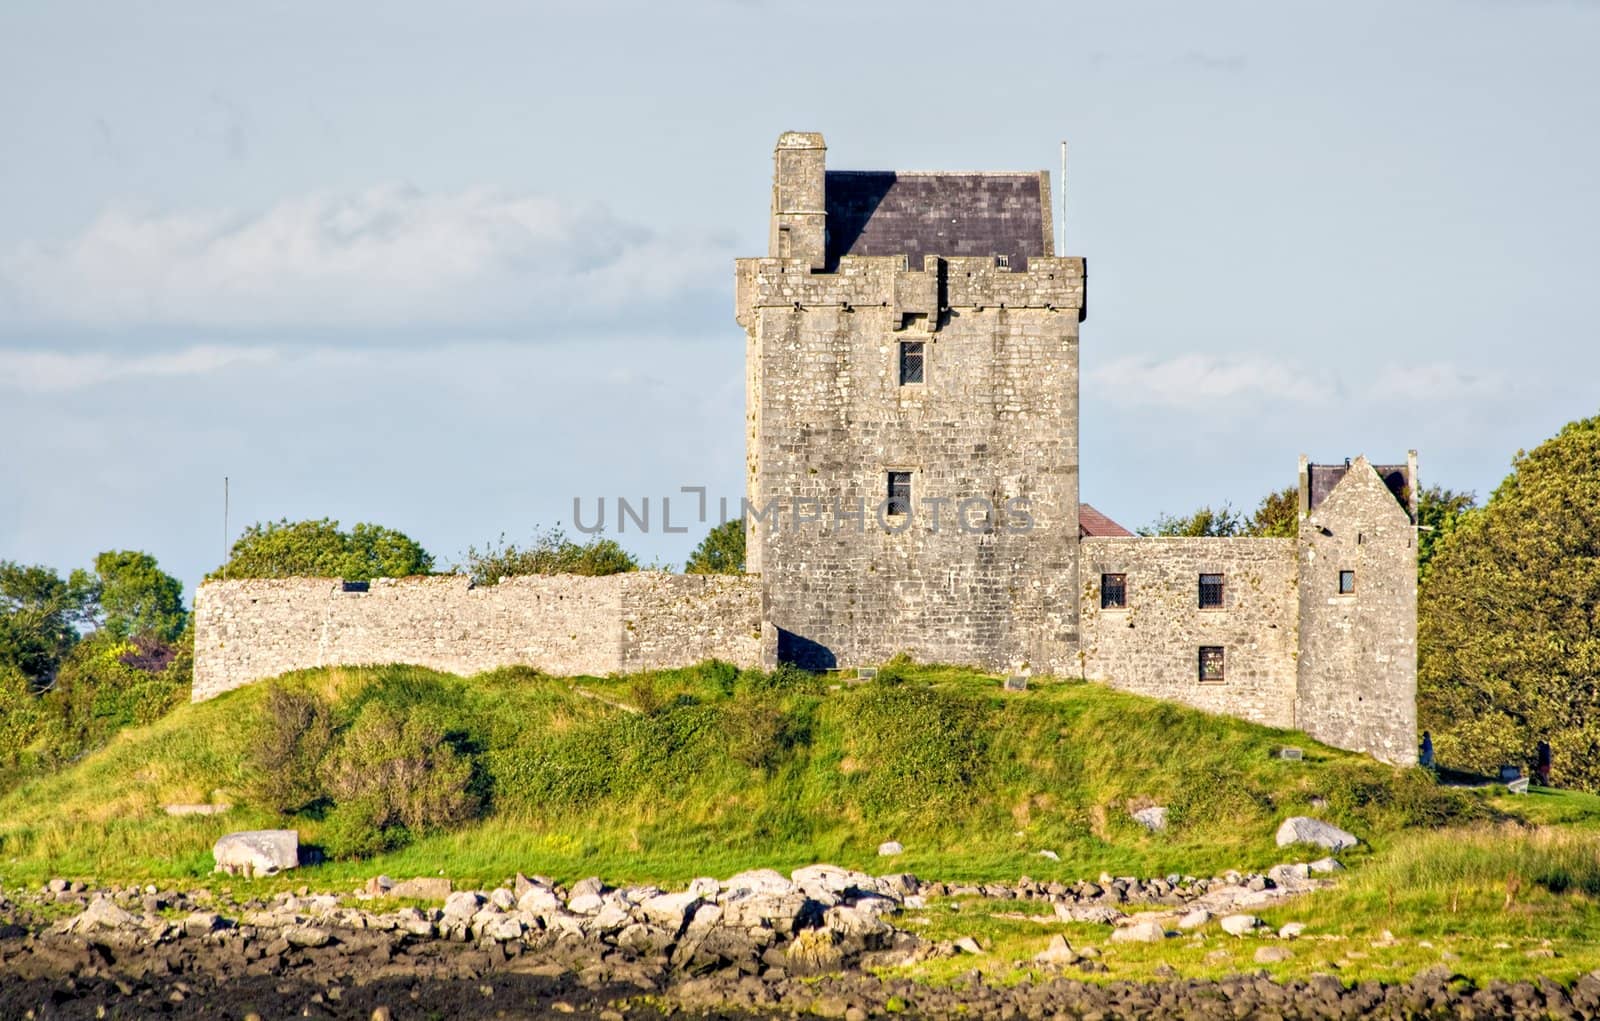 Castle in Ireland by sbonk